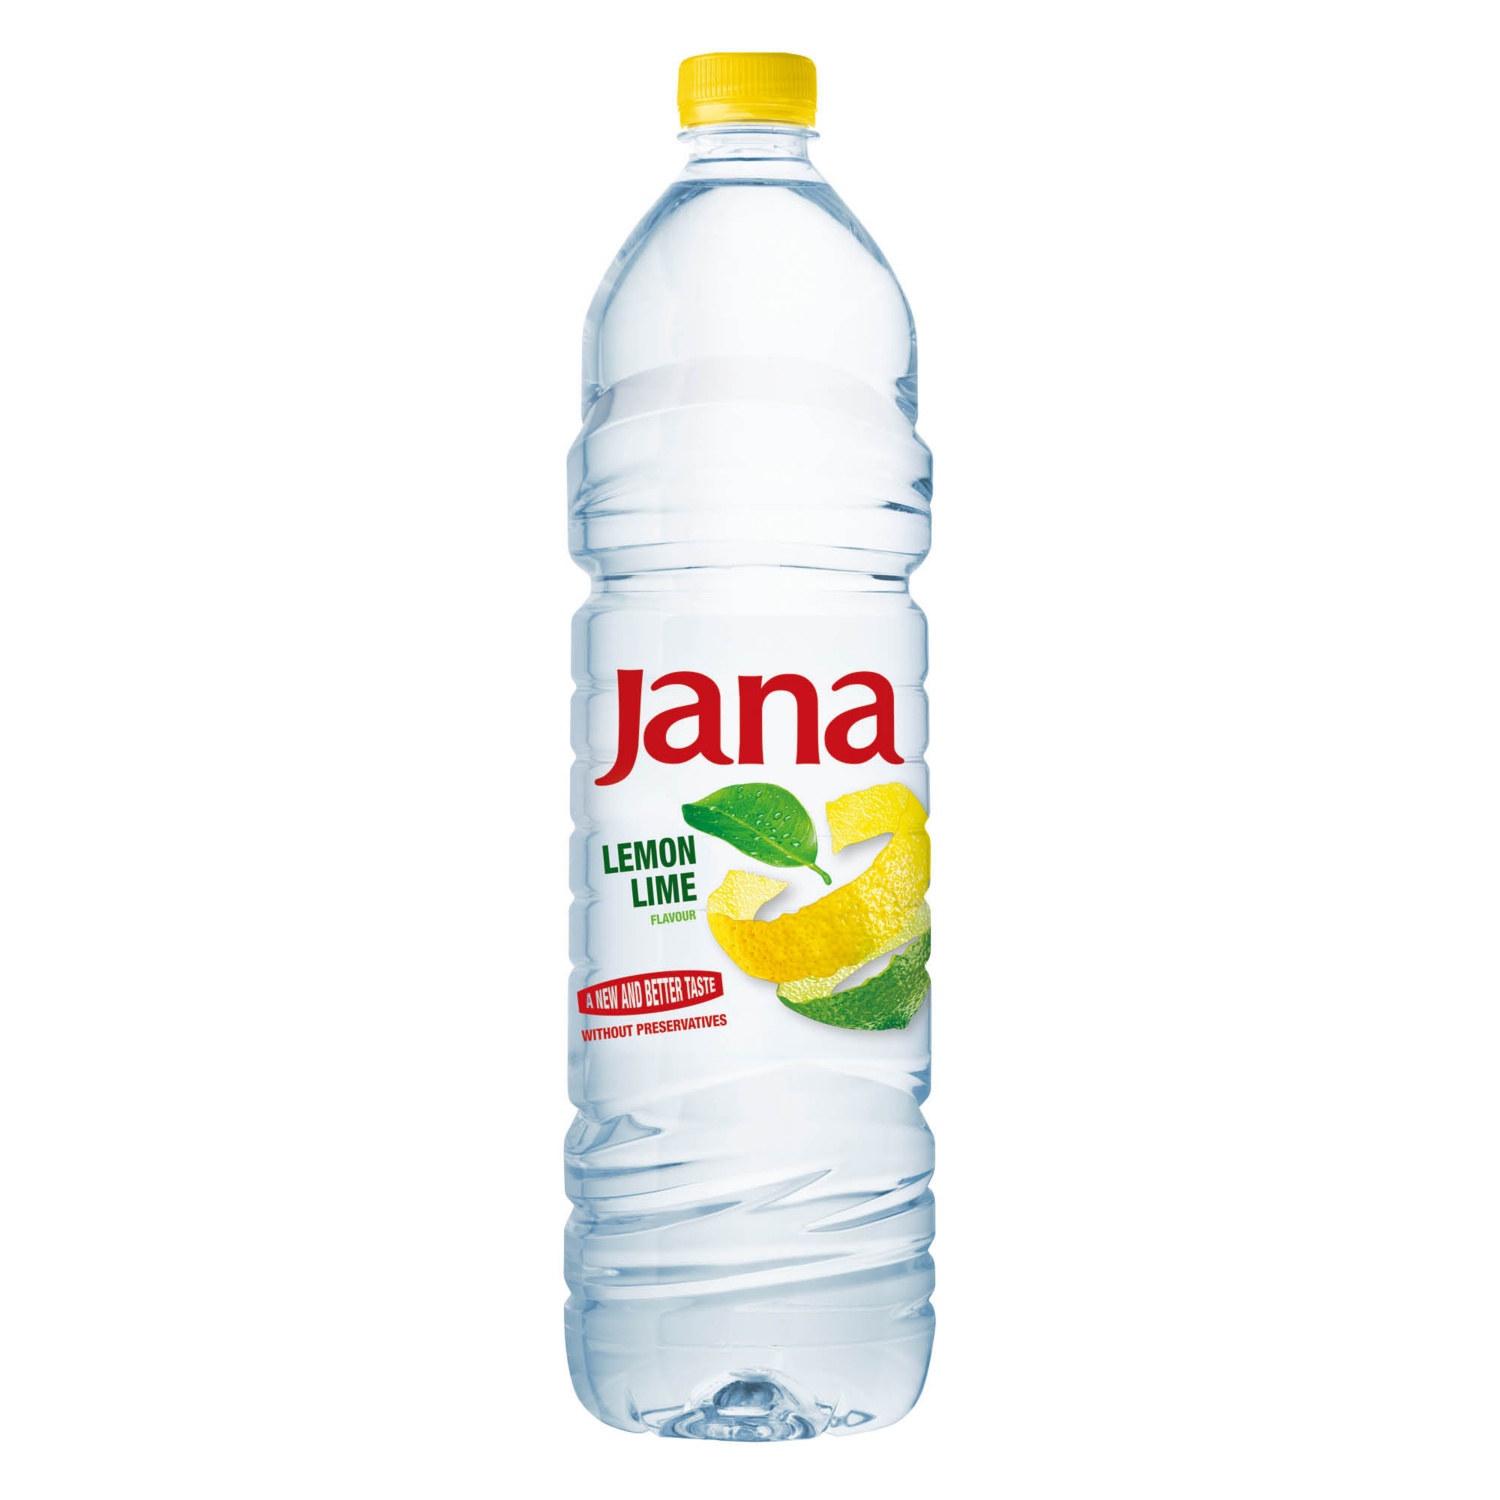 JANA Ízesített ásványvíz, citromos-limeos, 1,5 l